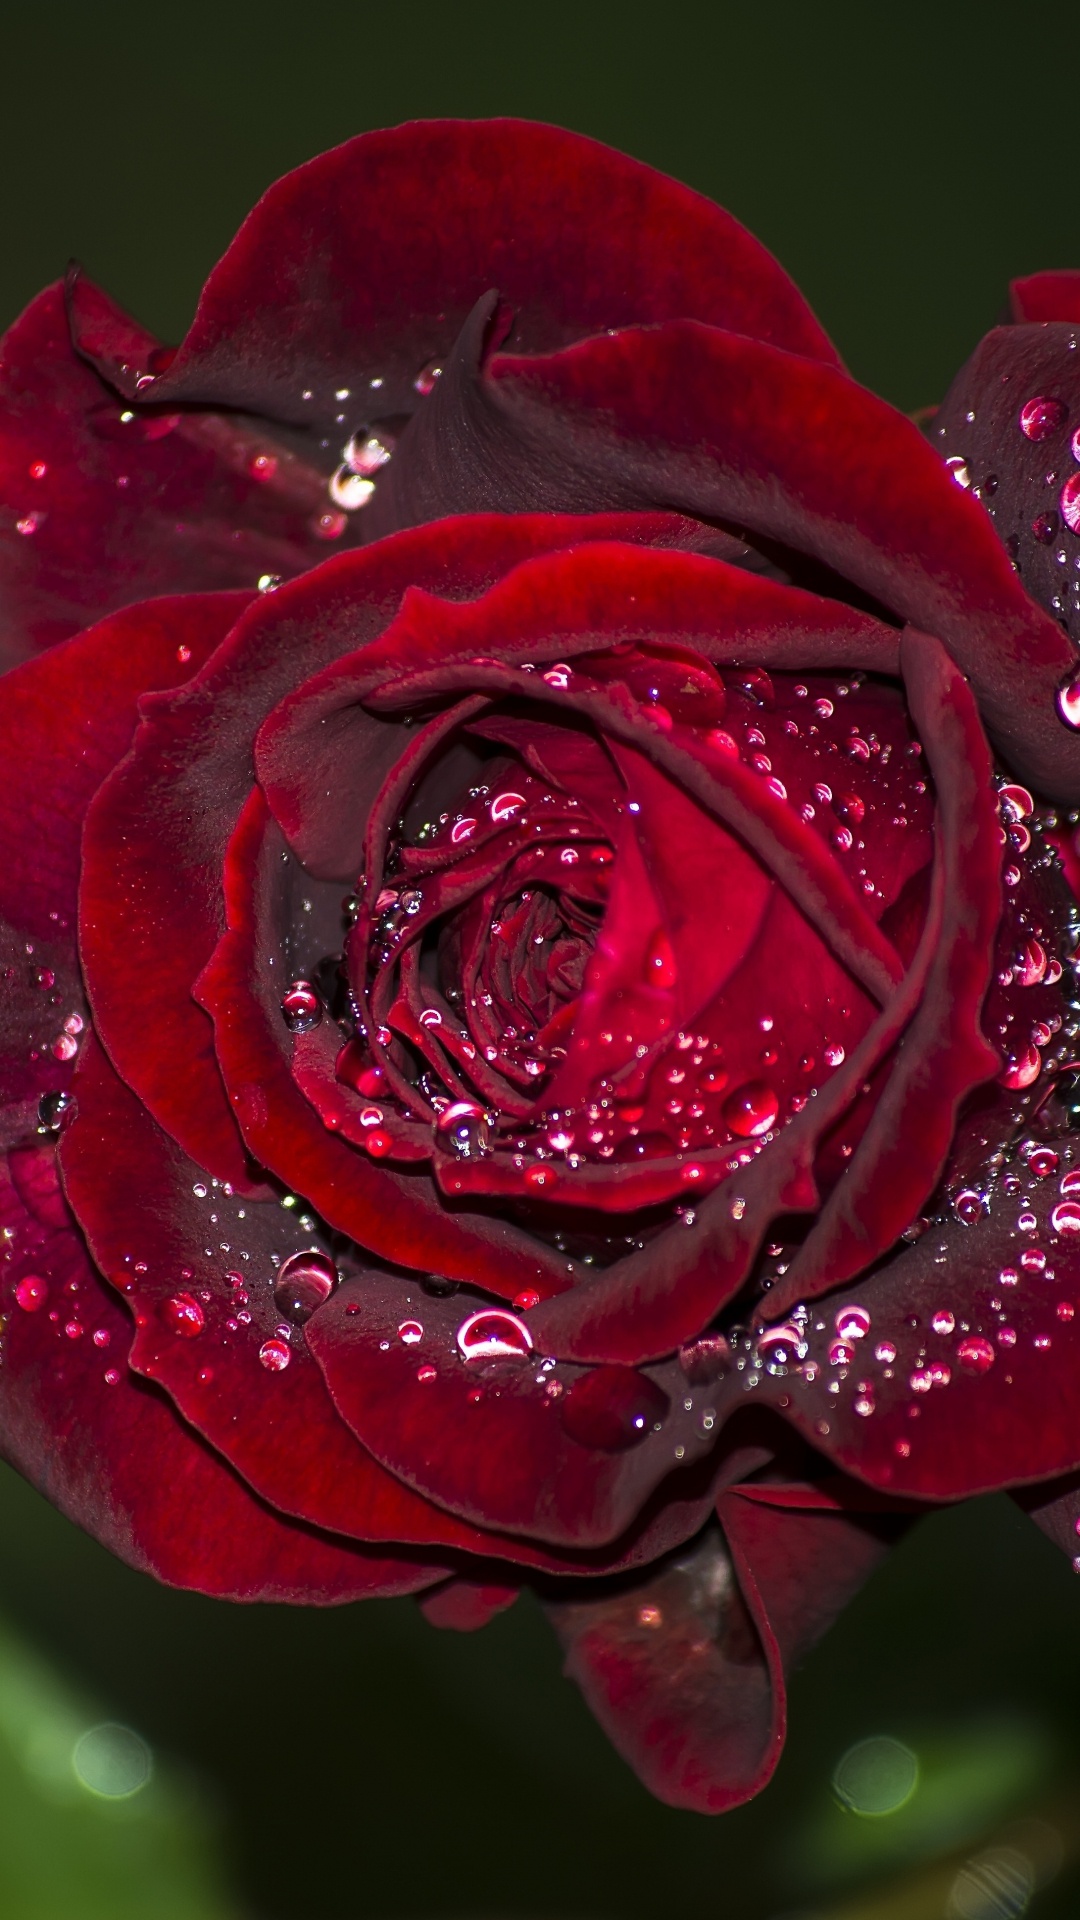 Rose Rouge en Fleurs Avec Des Gouttes de Rosée. Wallpaper in 1080x1920 Resolution